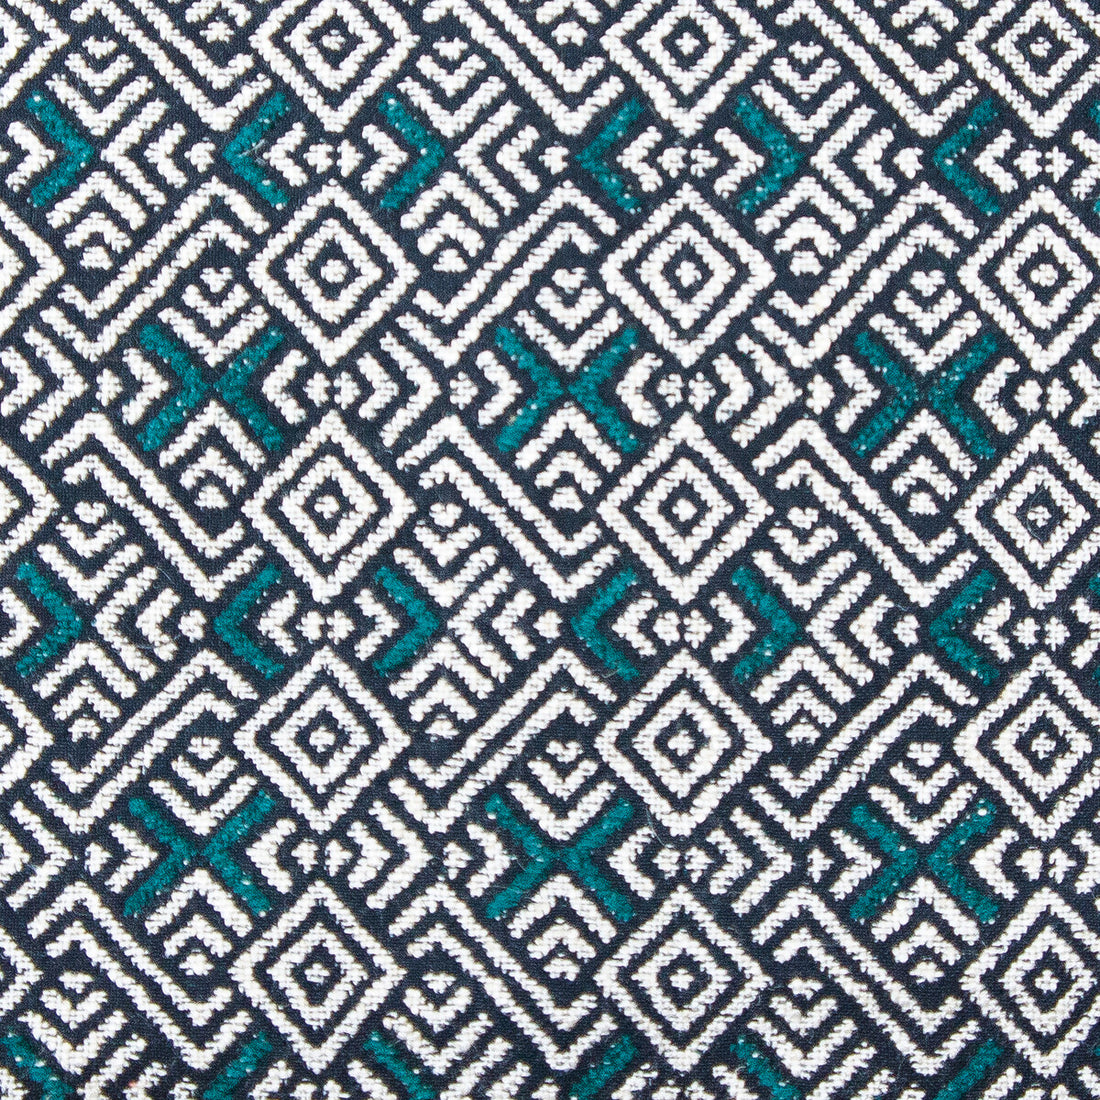 Inca fabric in oceano color - pattern GDT5567.003.0 - by Gaston y Daniela in the Gaston Nuevo Mundo collection